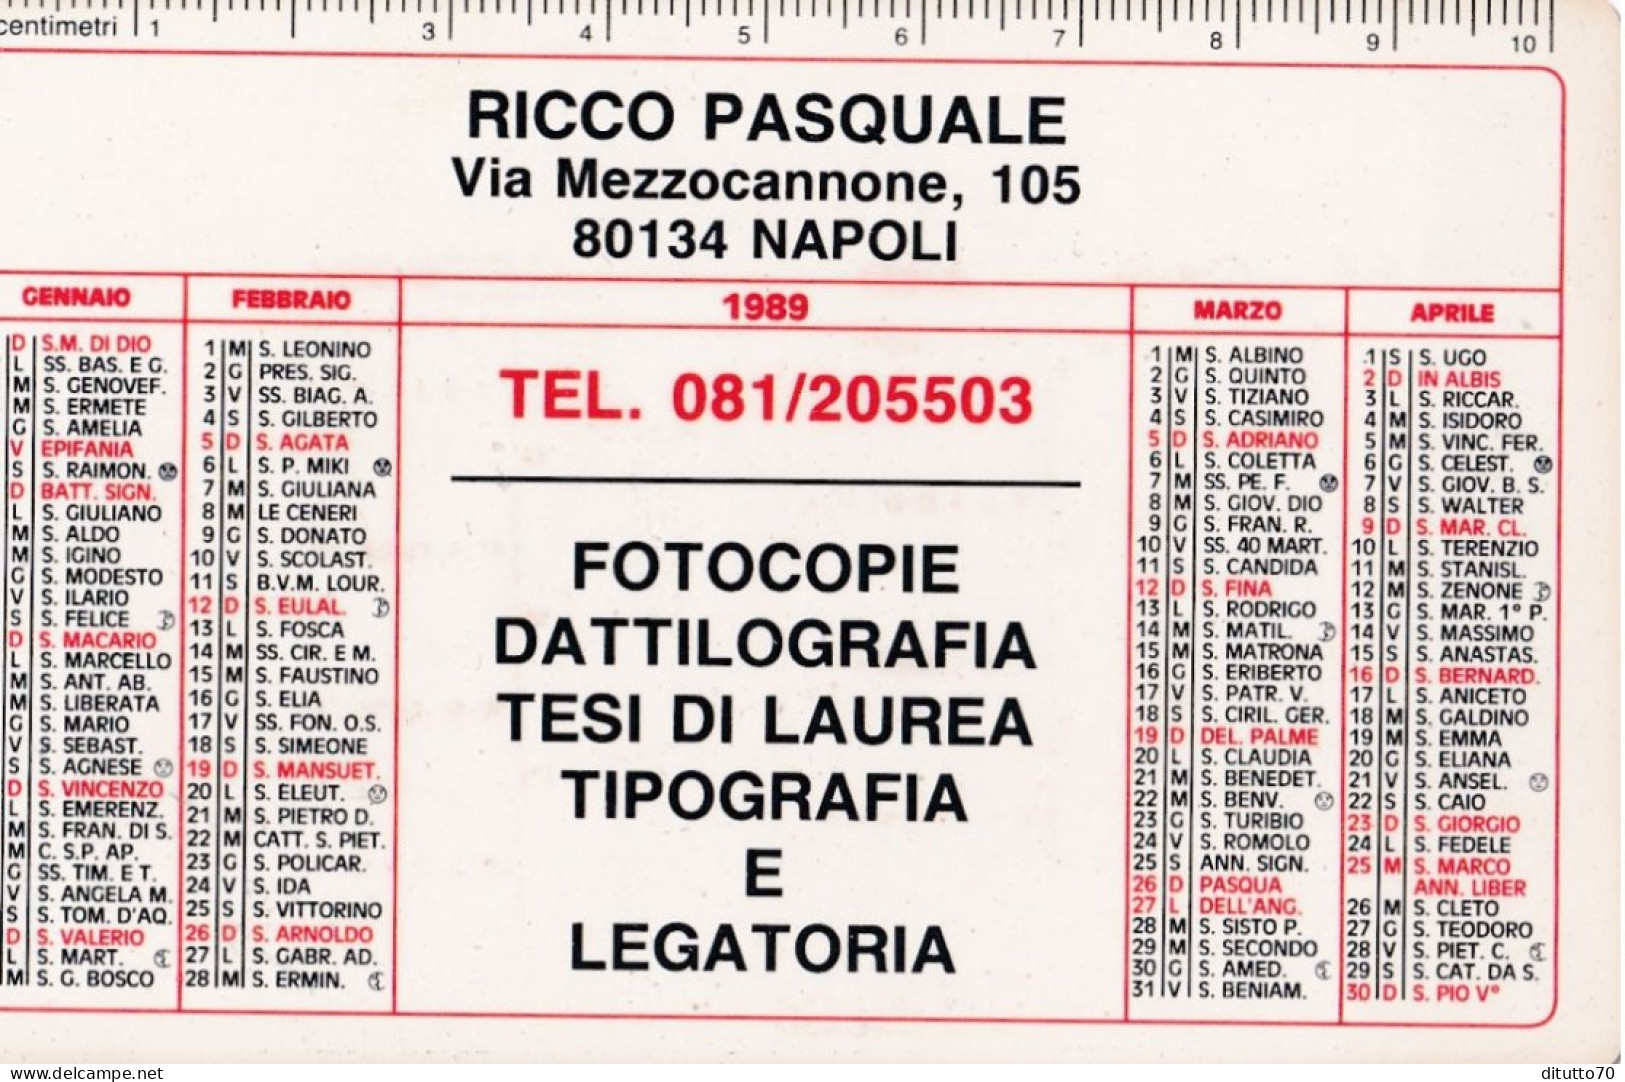 Calendarietto - Fotocopie Dattilografia - Ricco Pasquale - Napoli - Anno 1989 - Tamaño Pequeño : 1981-90